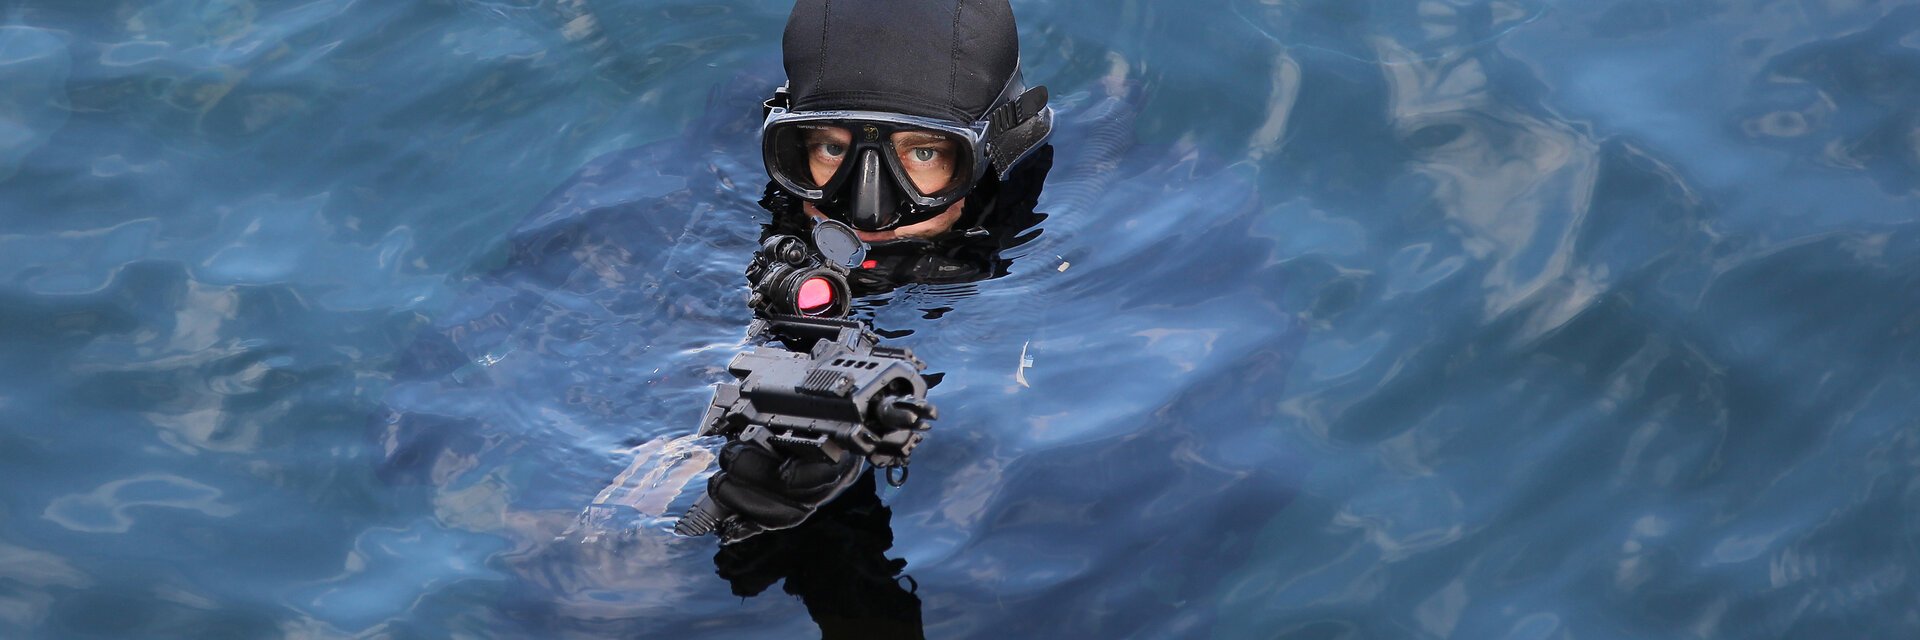 Ein Soldat im Taucheranzug schaut mit einem Gewehr aus dem Wasser